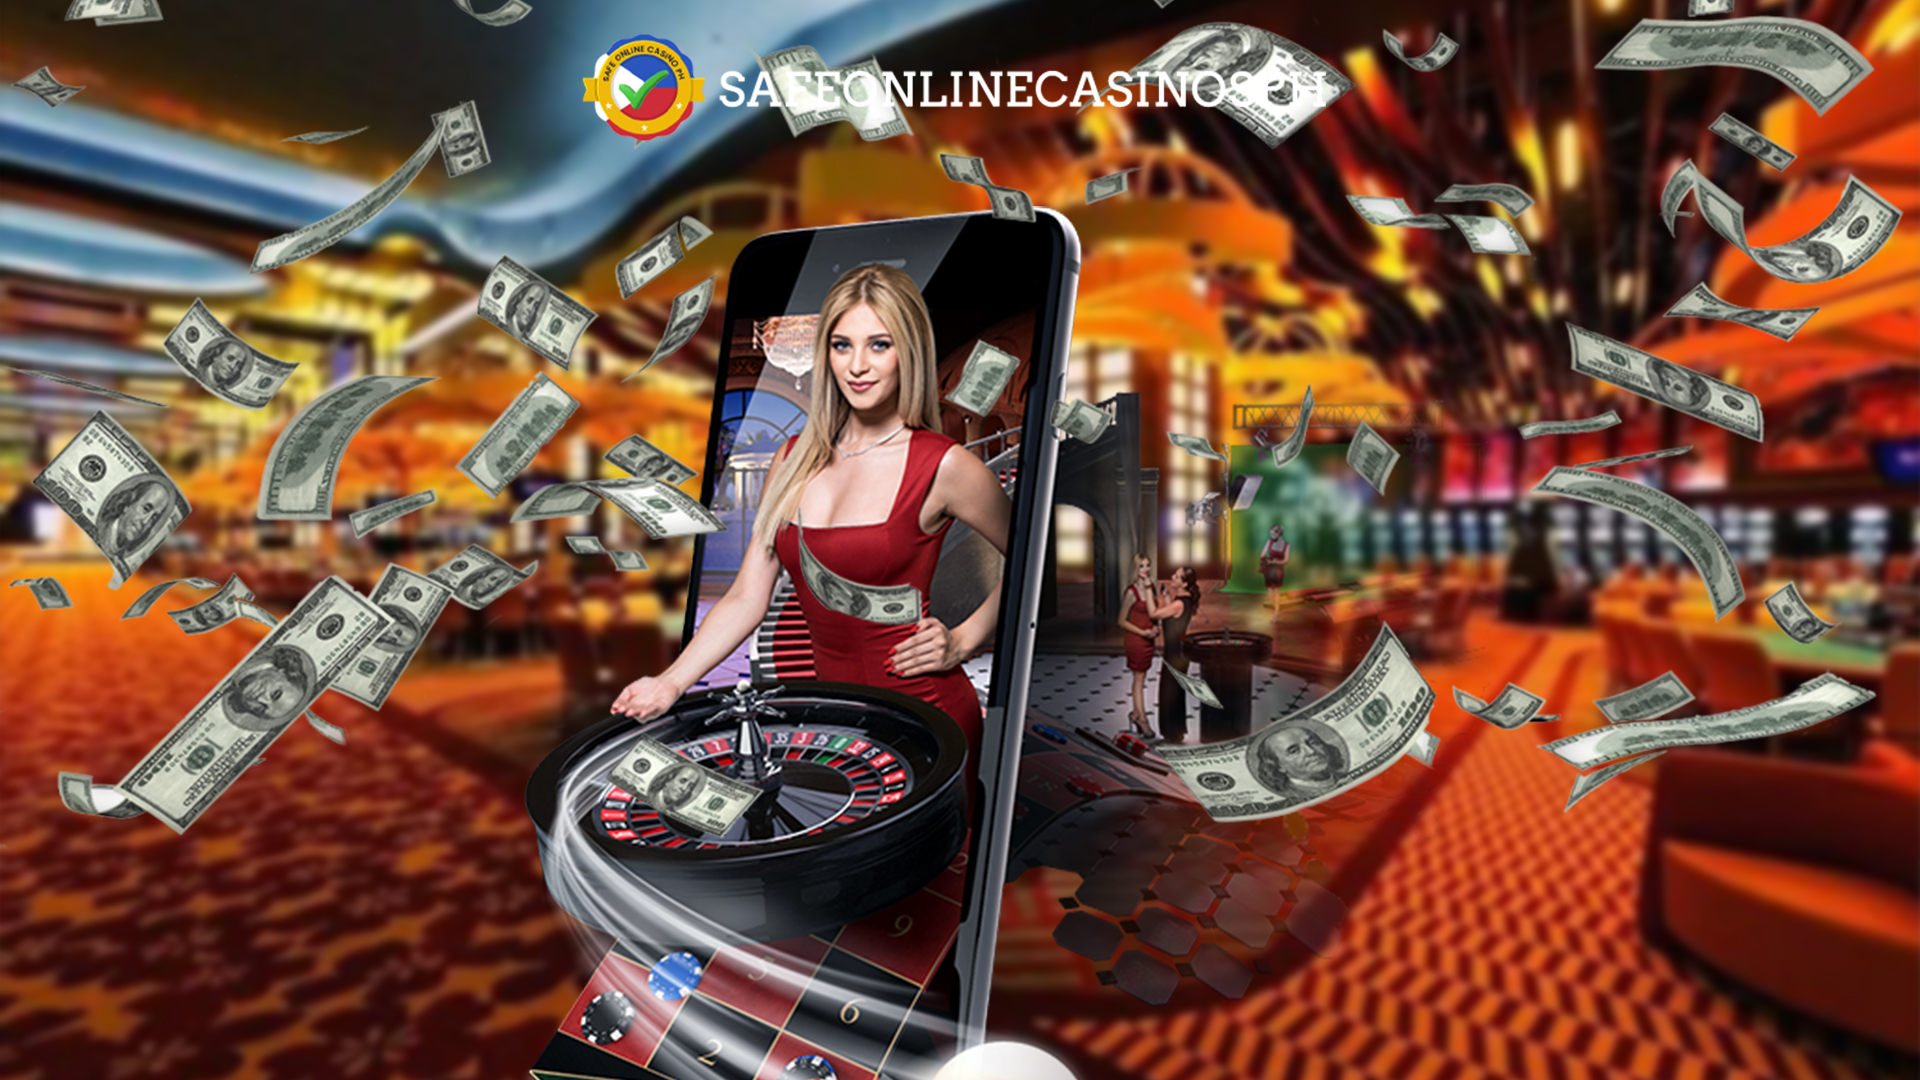 Live Casinos